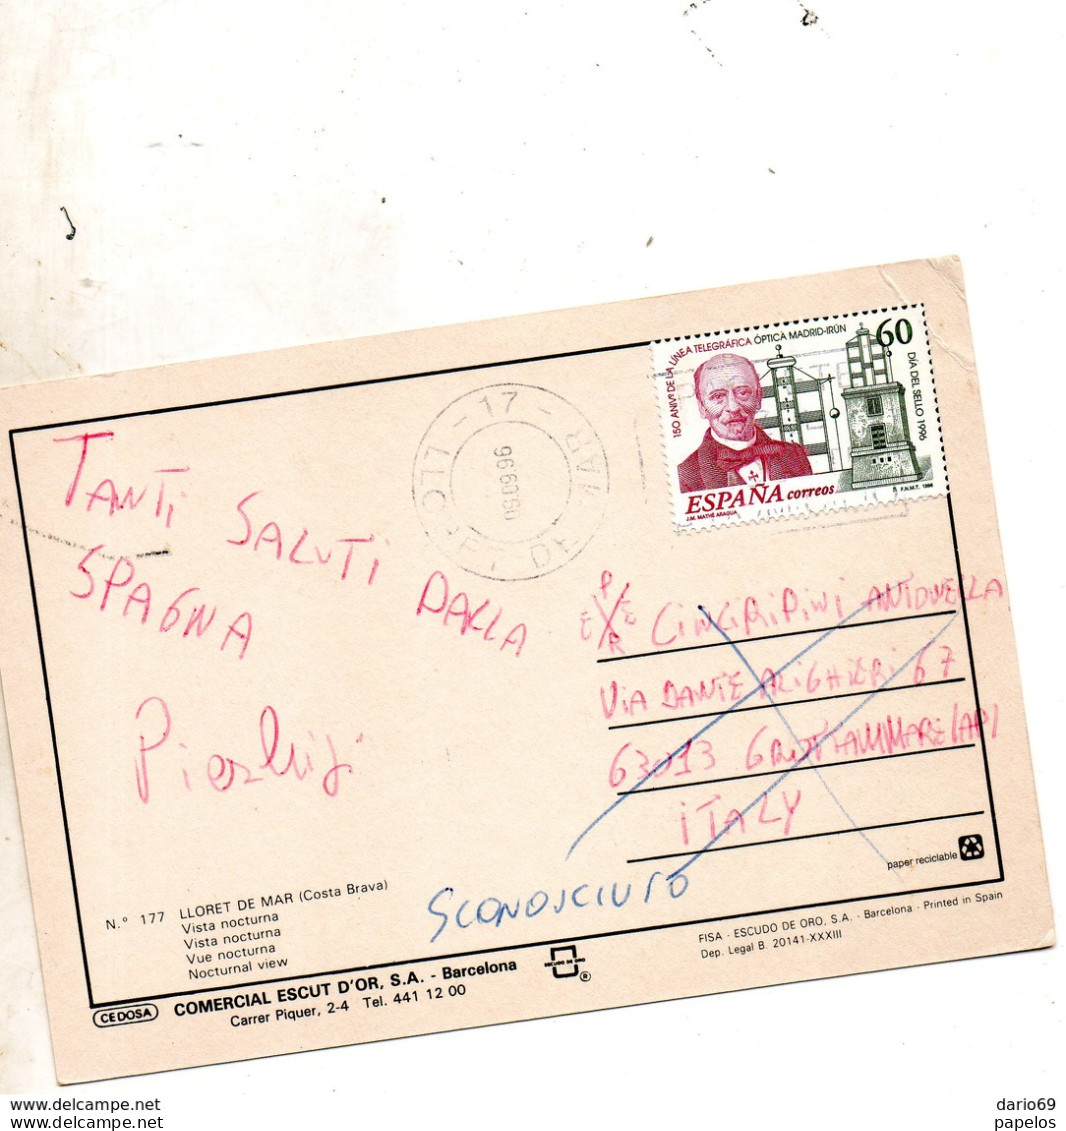 1996  CARTOLINA  CON ANNULLO Lloret De Mar - Briefe U. Dokumente